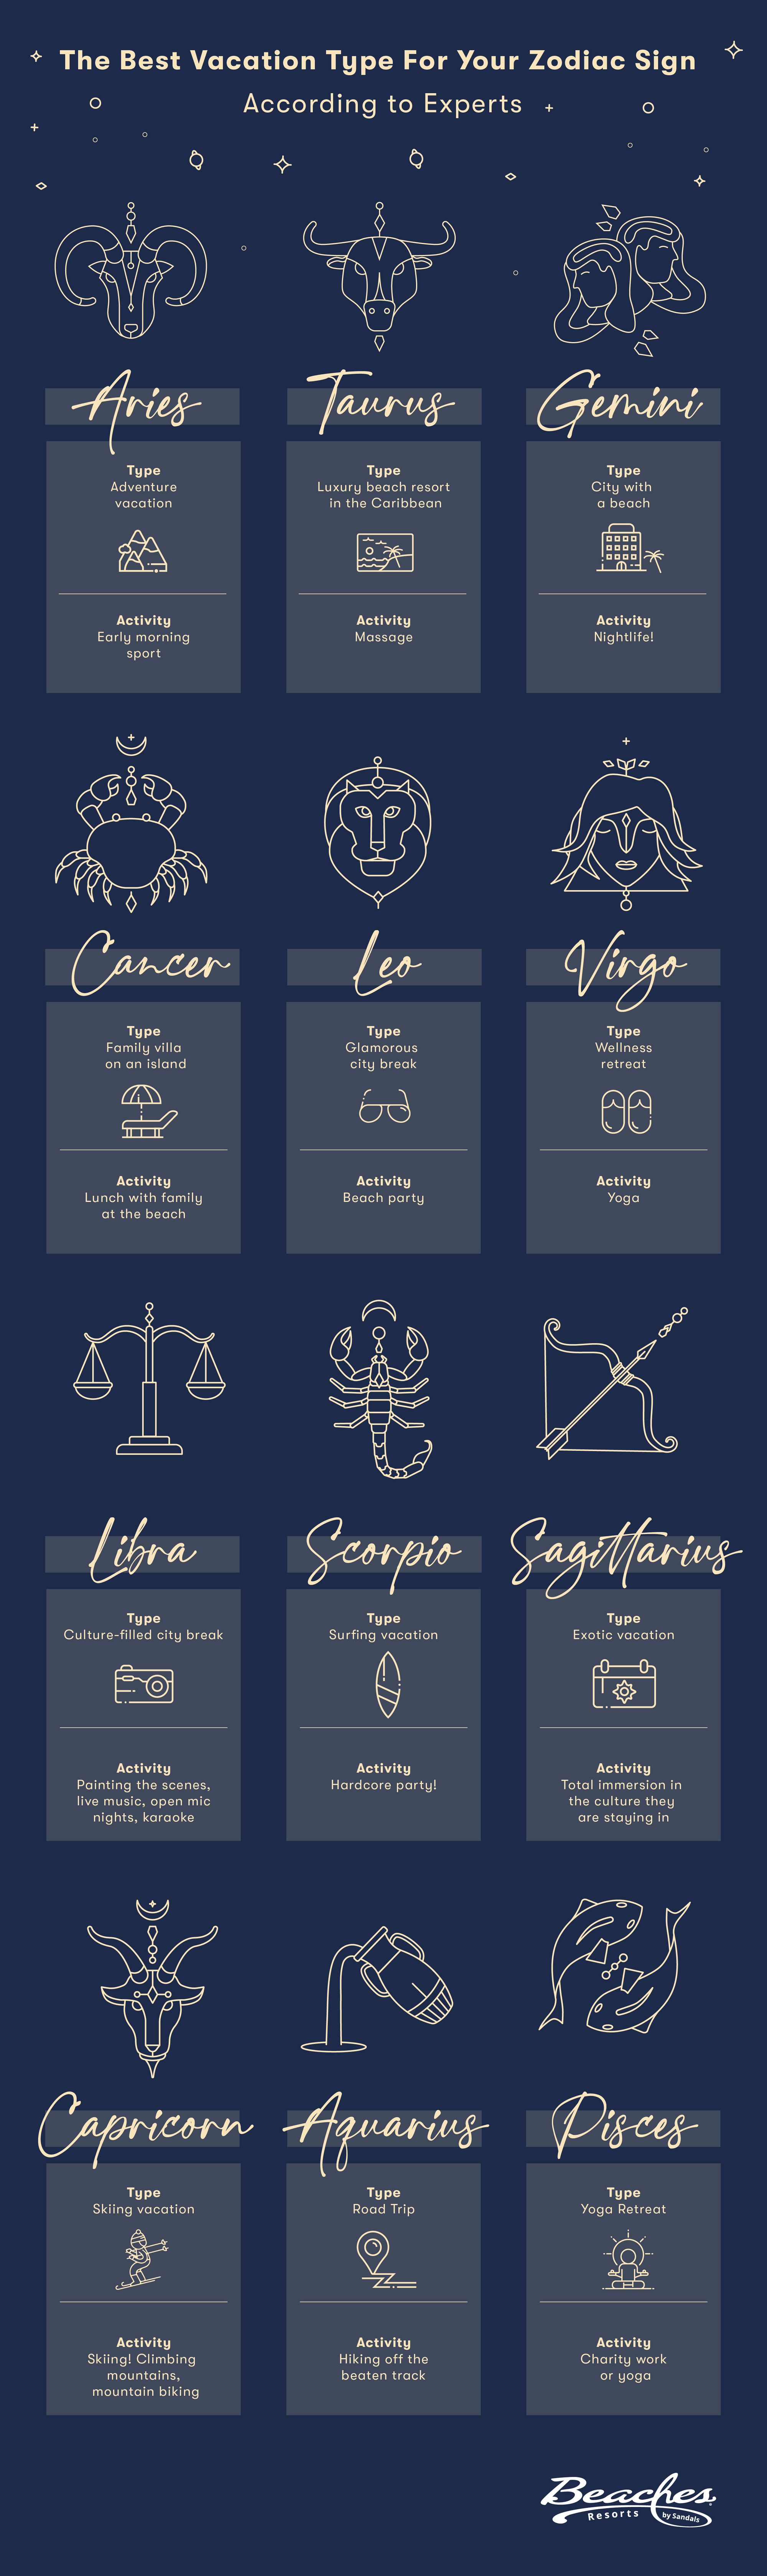 All-Zodiacs-Graphic